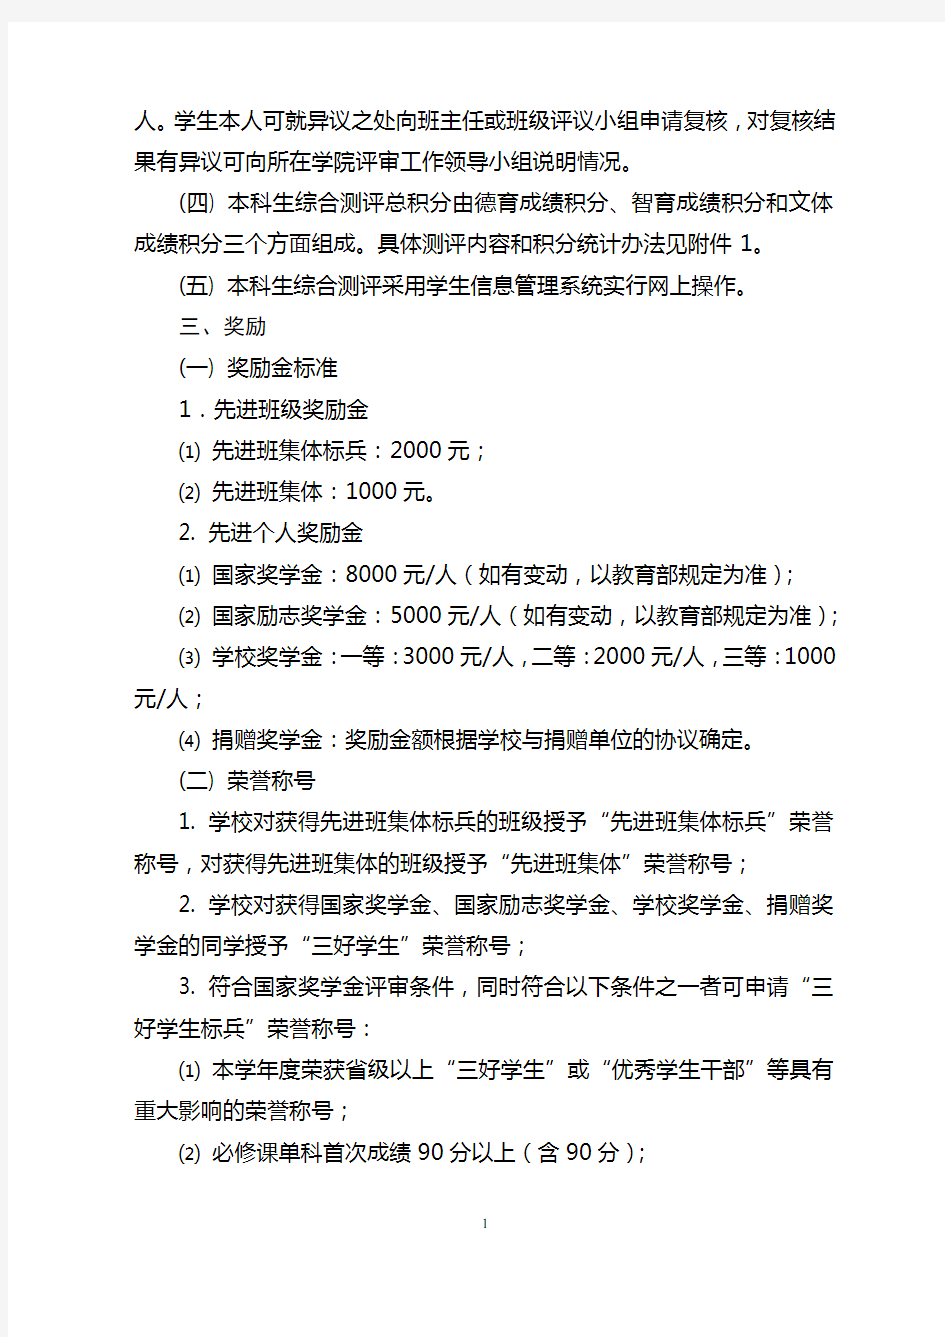 华南理工大学本科生综合测评及奖励办法(修订)